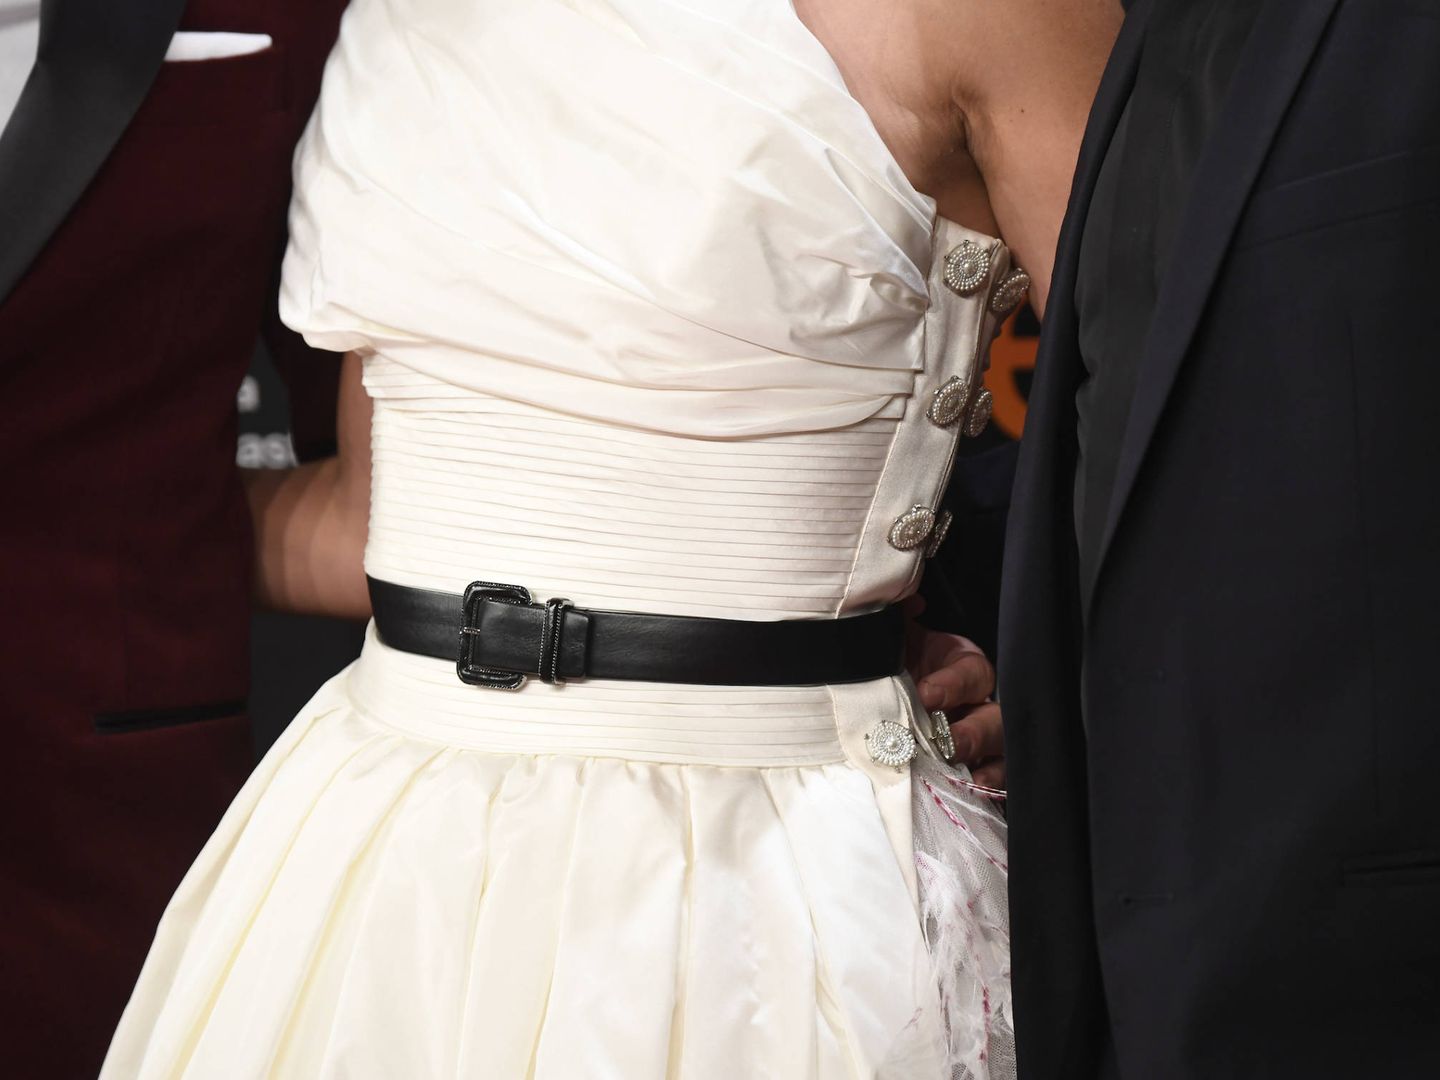 Detalle del cinturón del vestido. (Limited Pictures)